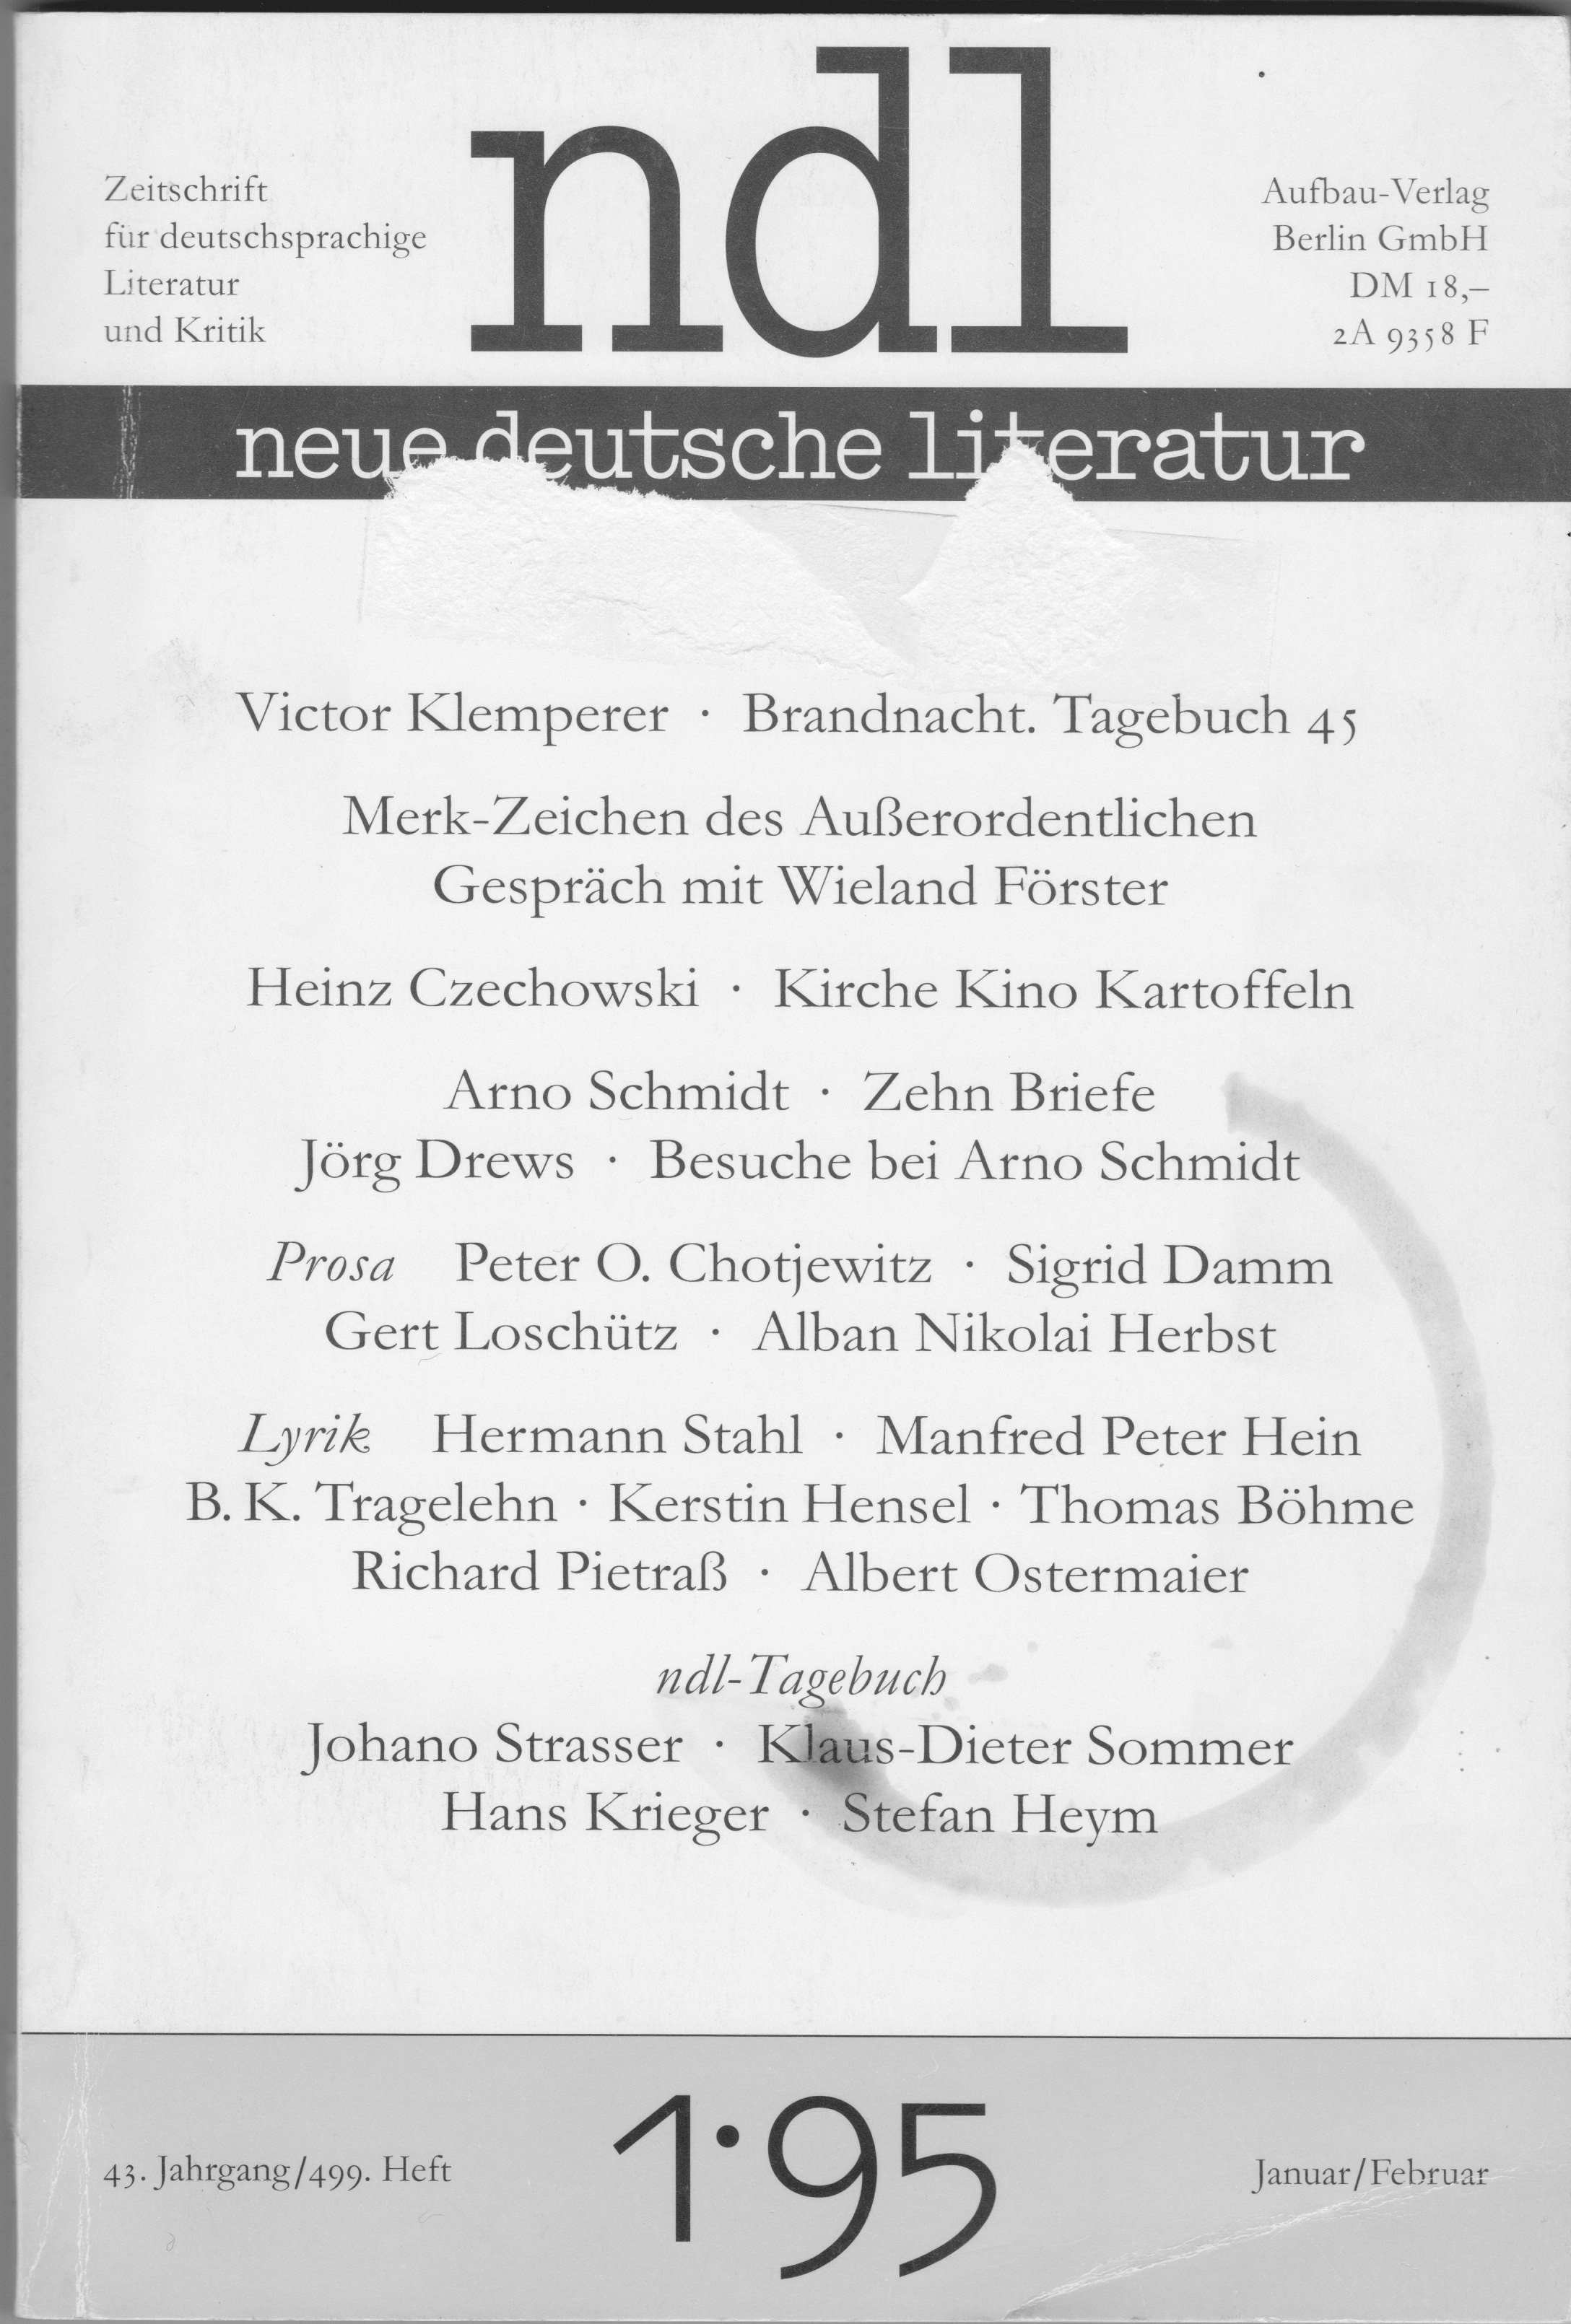 Besprechnung von "Eunuchenglück",
Birgit Dahlke,
ndl 1/1995